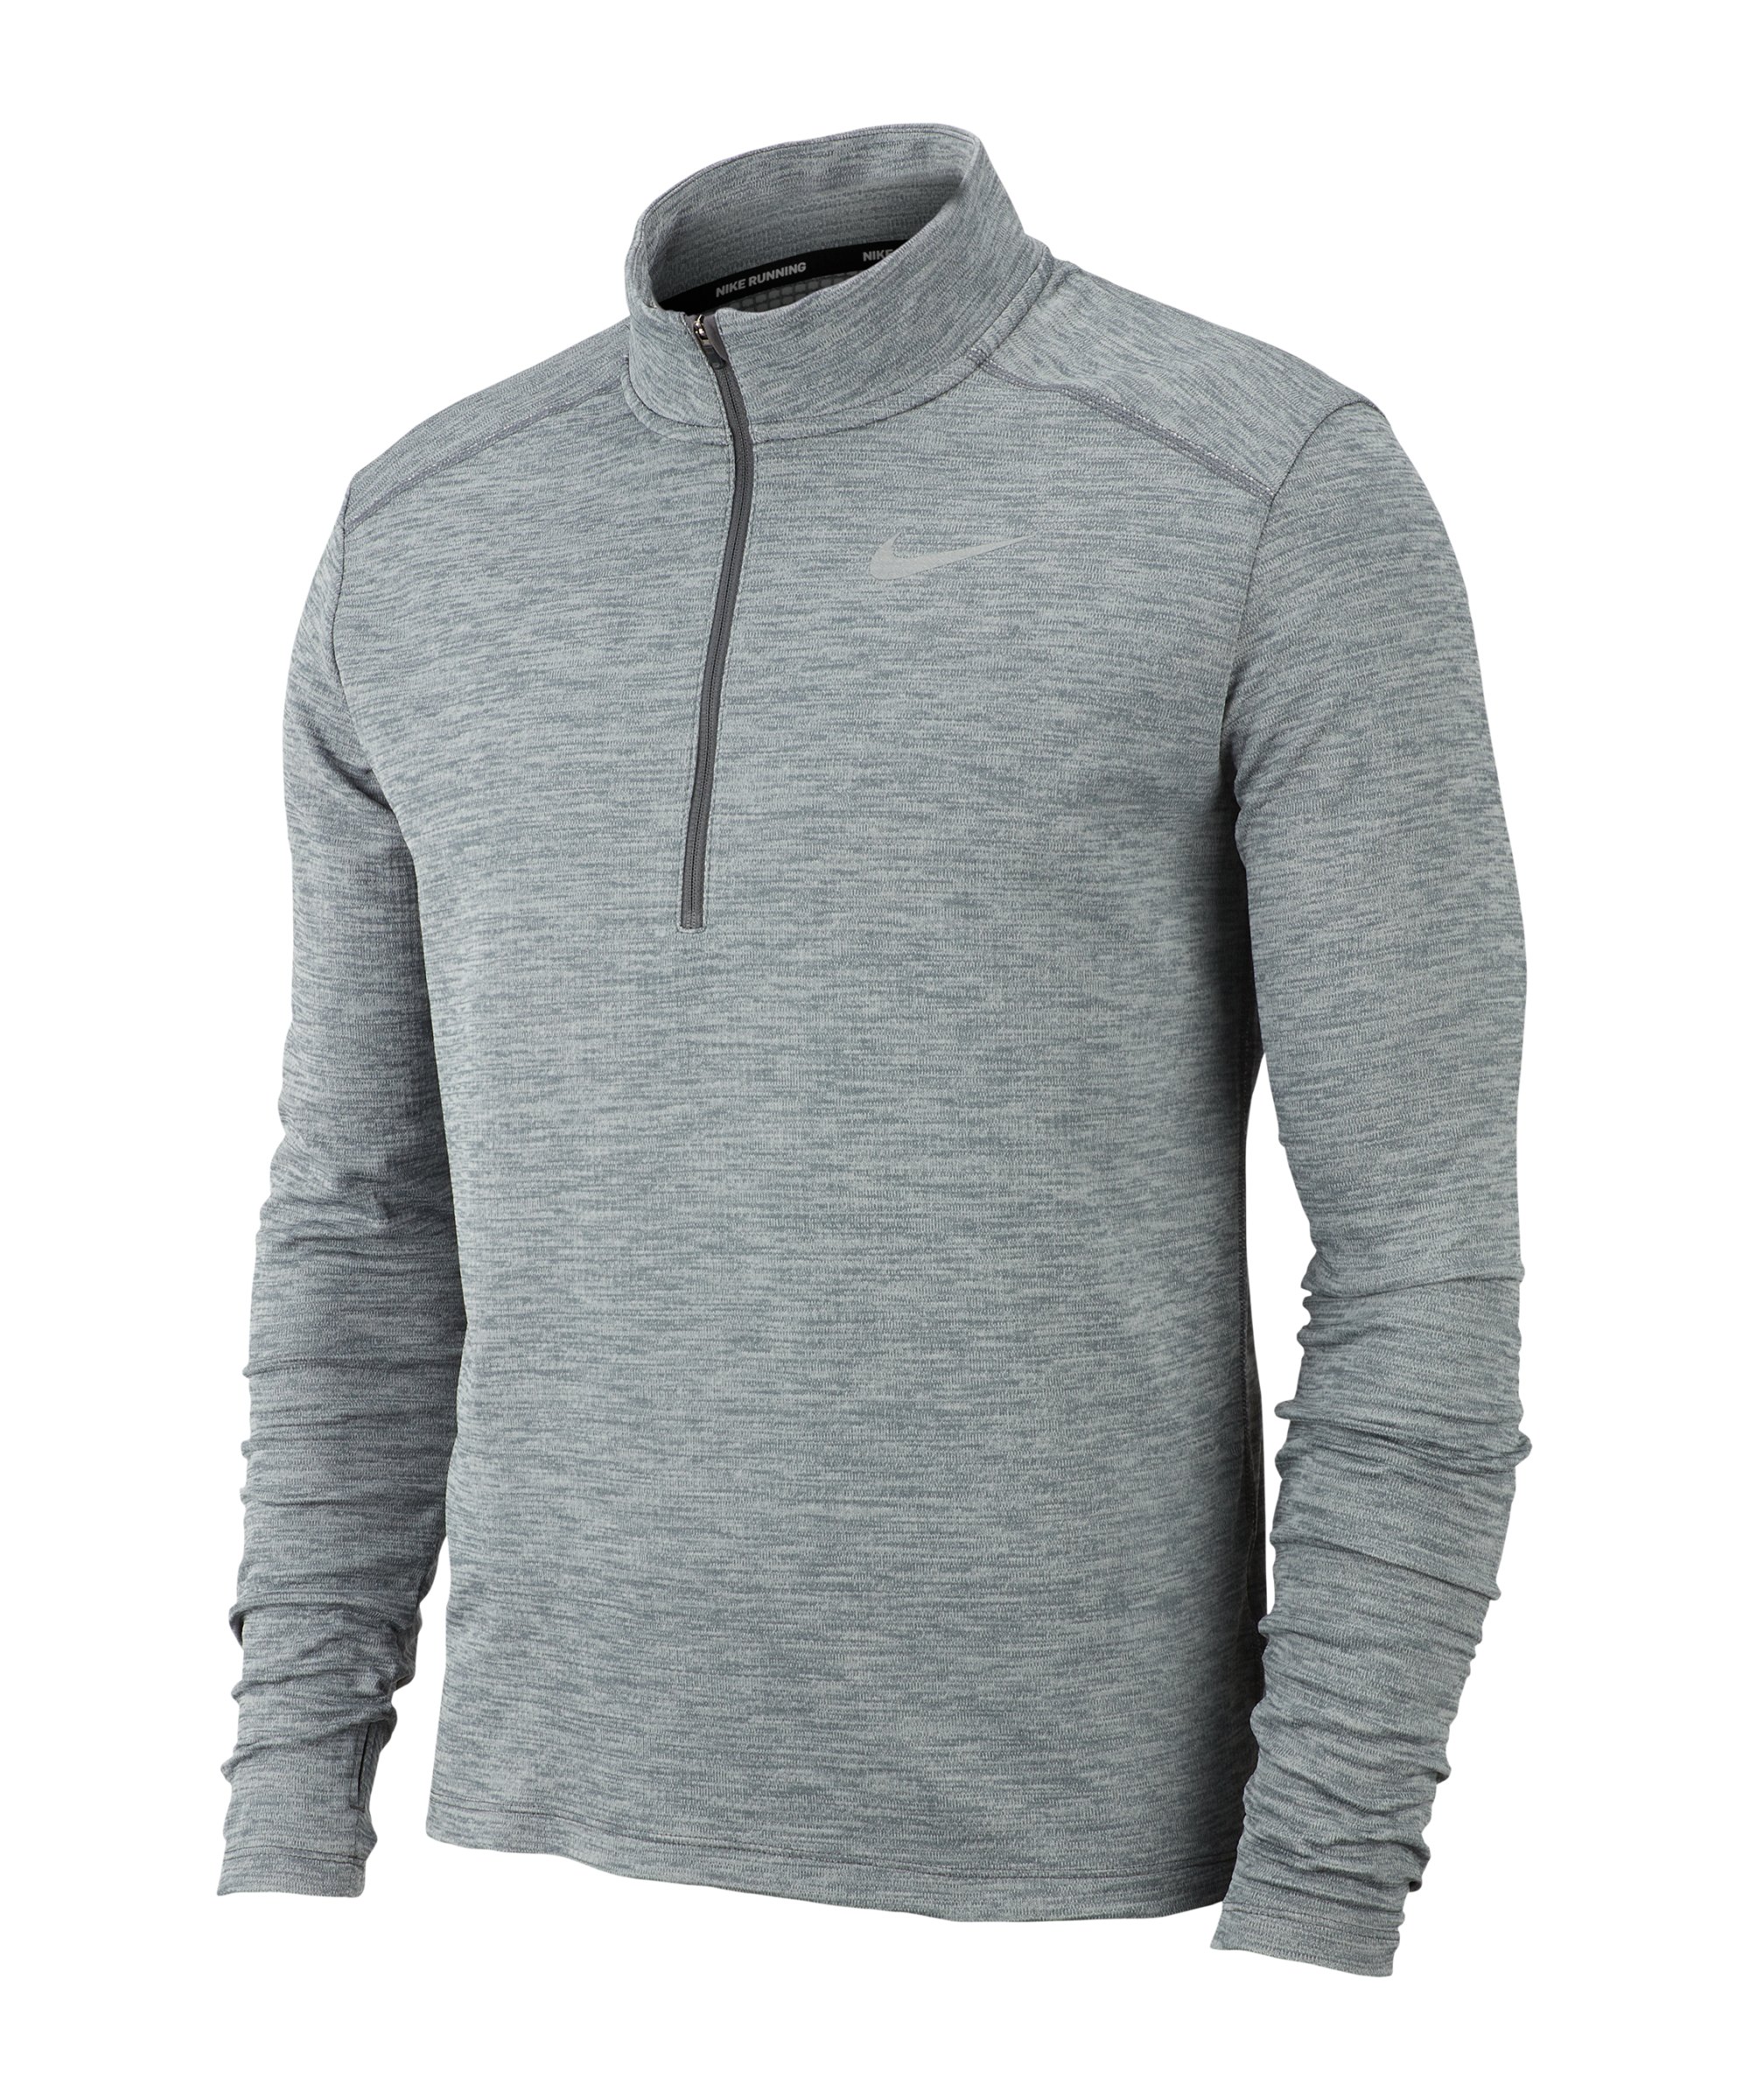 Nike Pacer Shirt langarm Running Grau F068 - grau